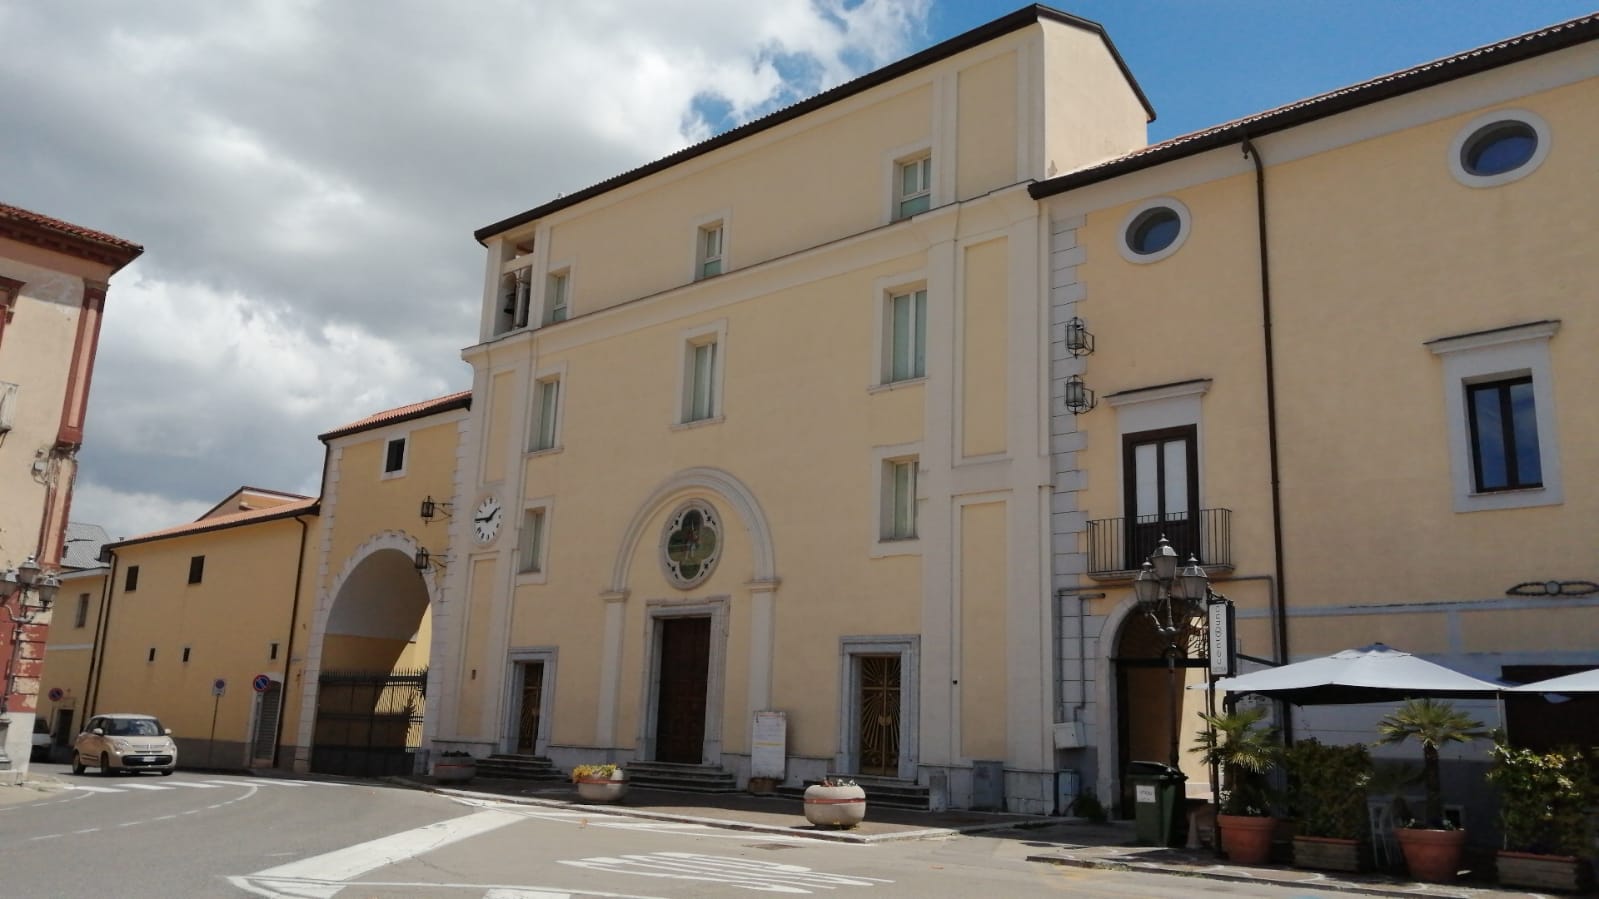 Trasferimento suore di San Giorgio del Sannio, il sindaco Pepe: “Il Monastero monumento di cultura del nostro Comune”